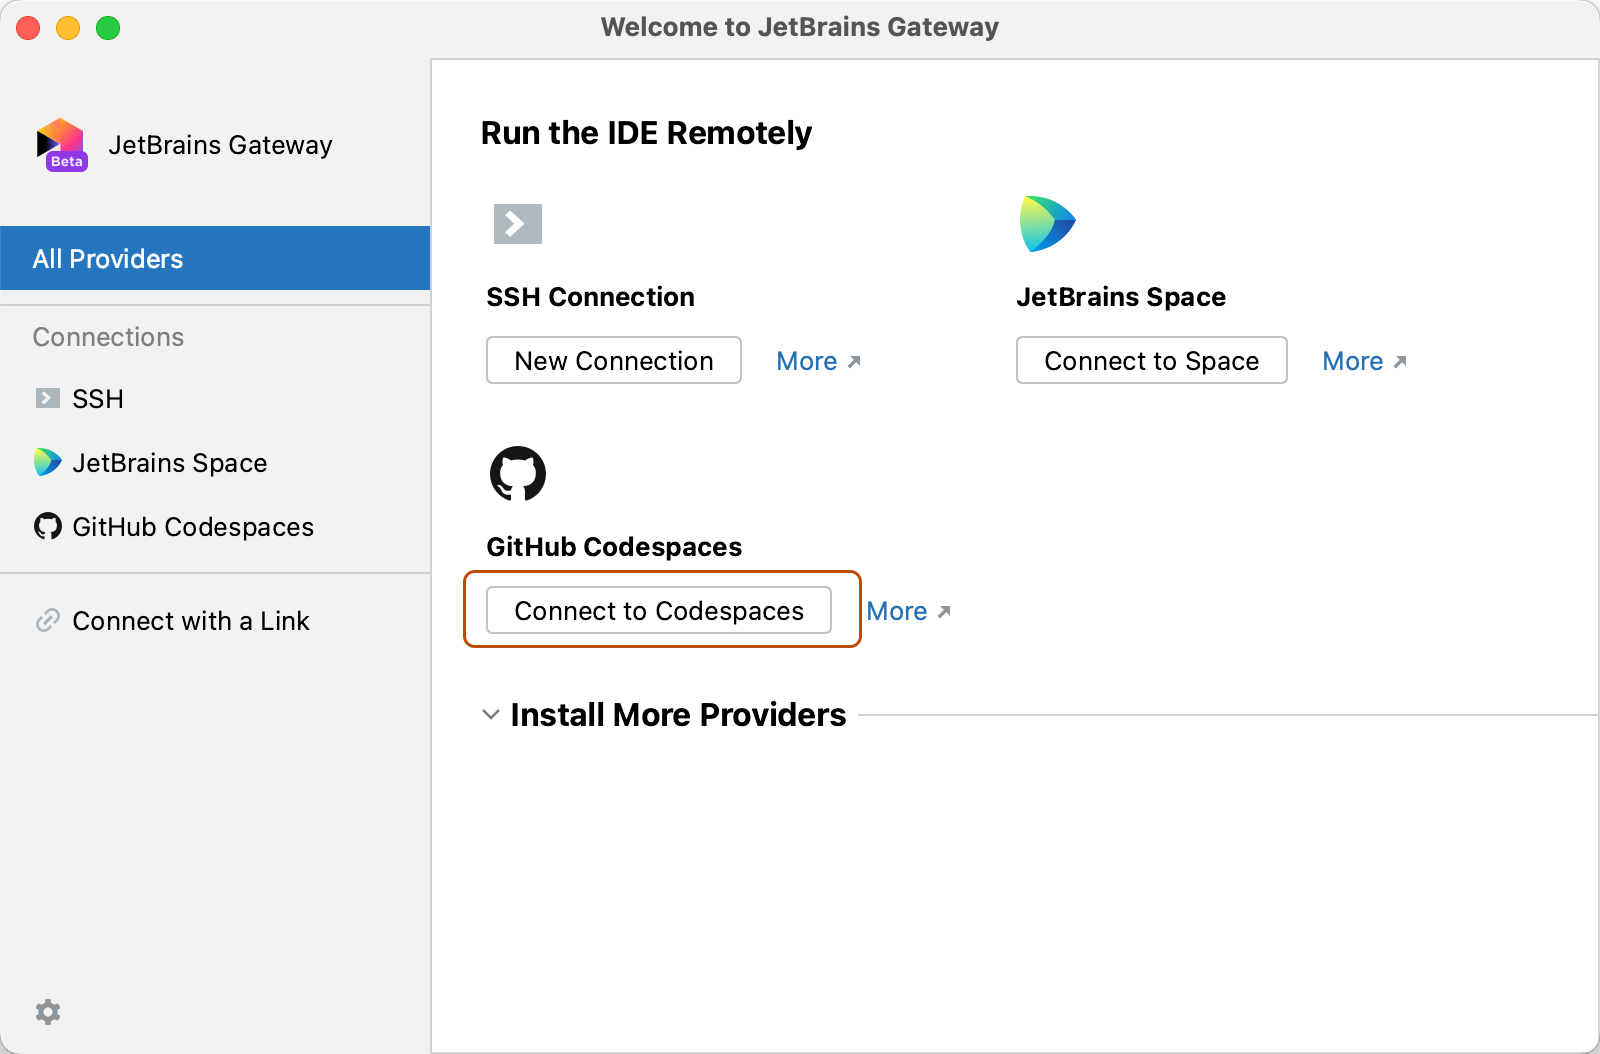 Captura de tela da home page do JetBrains Gateway mostrando o botão "Conectar-se aos Codespaces".